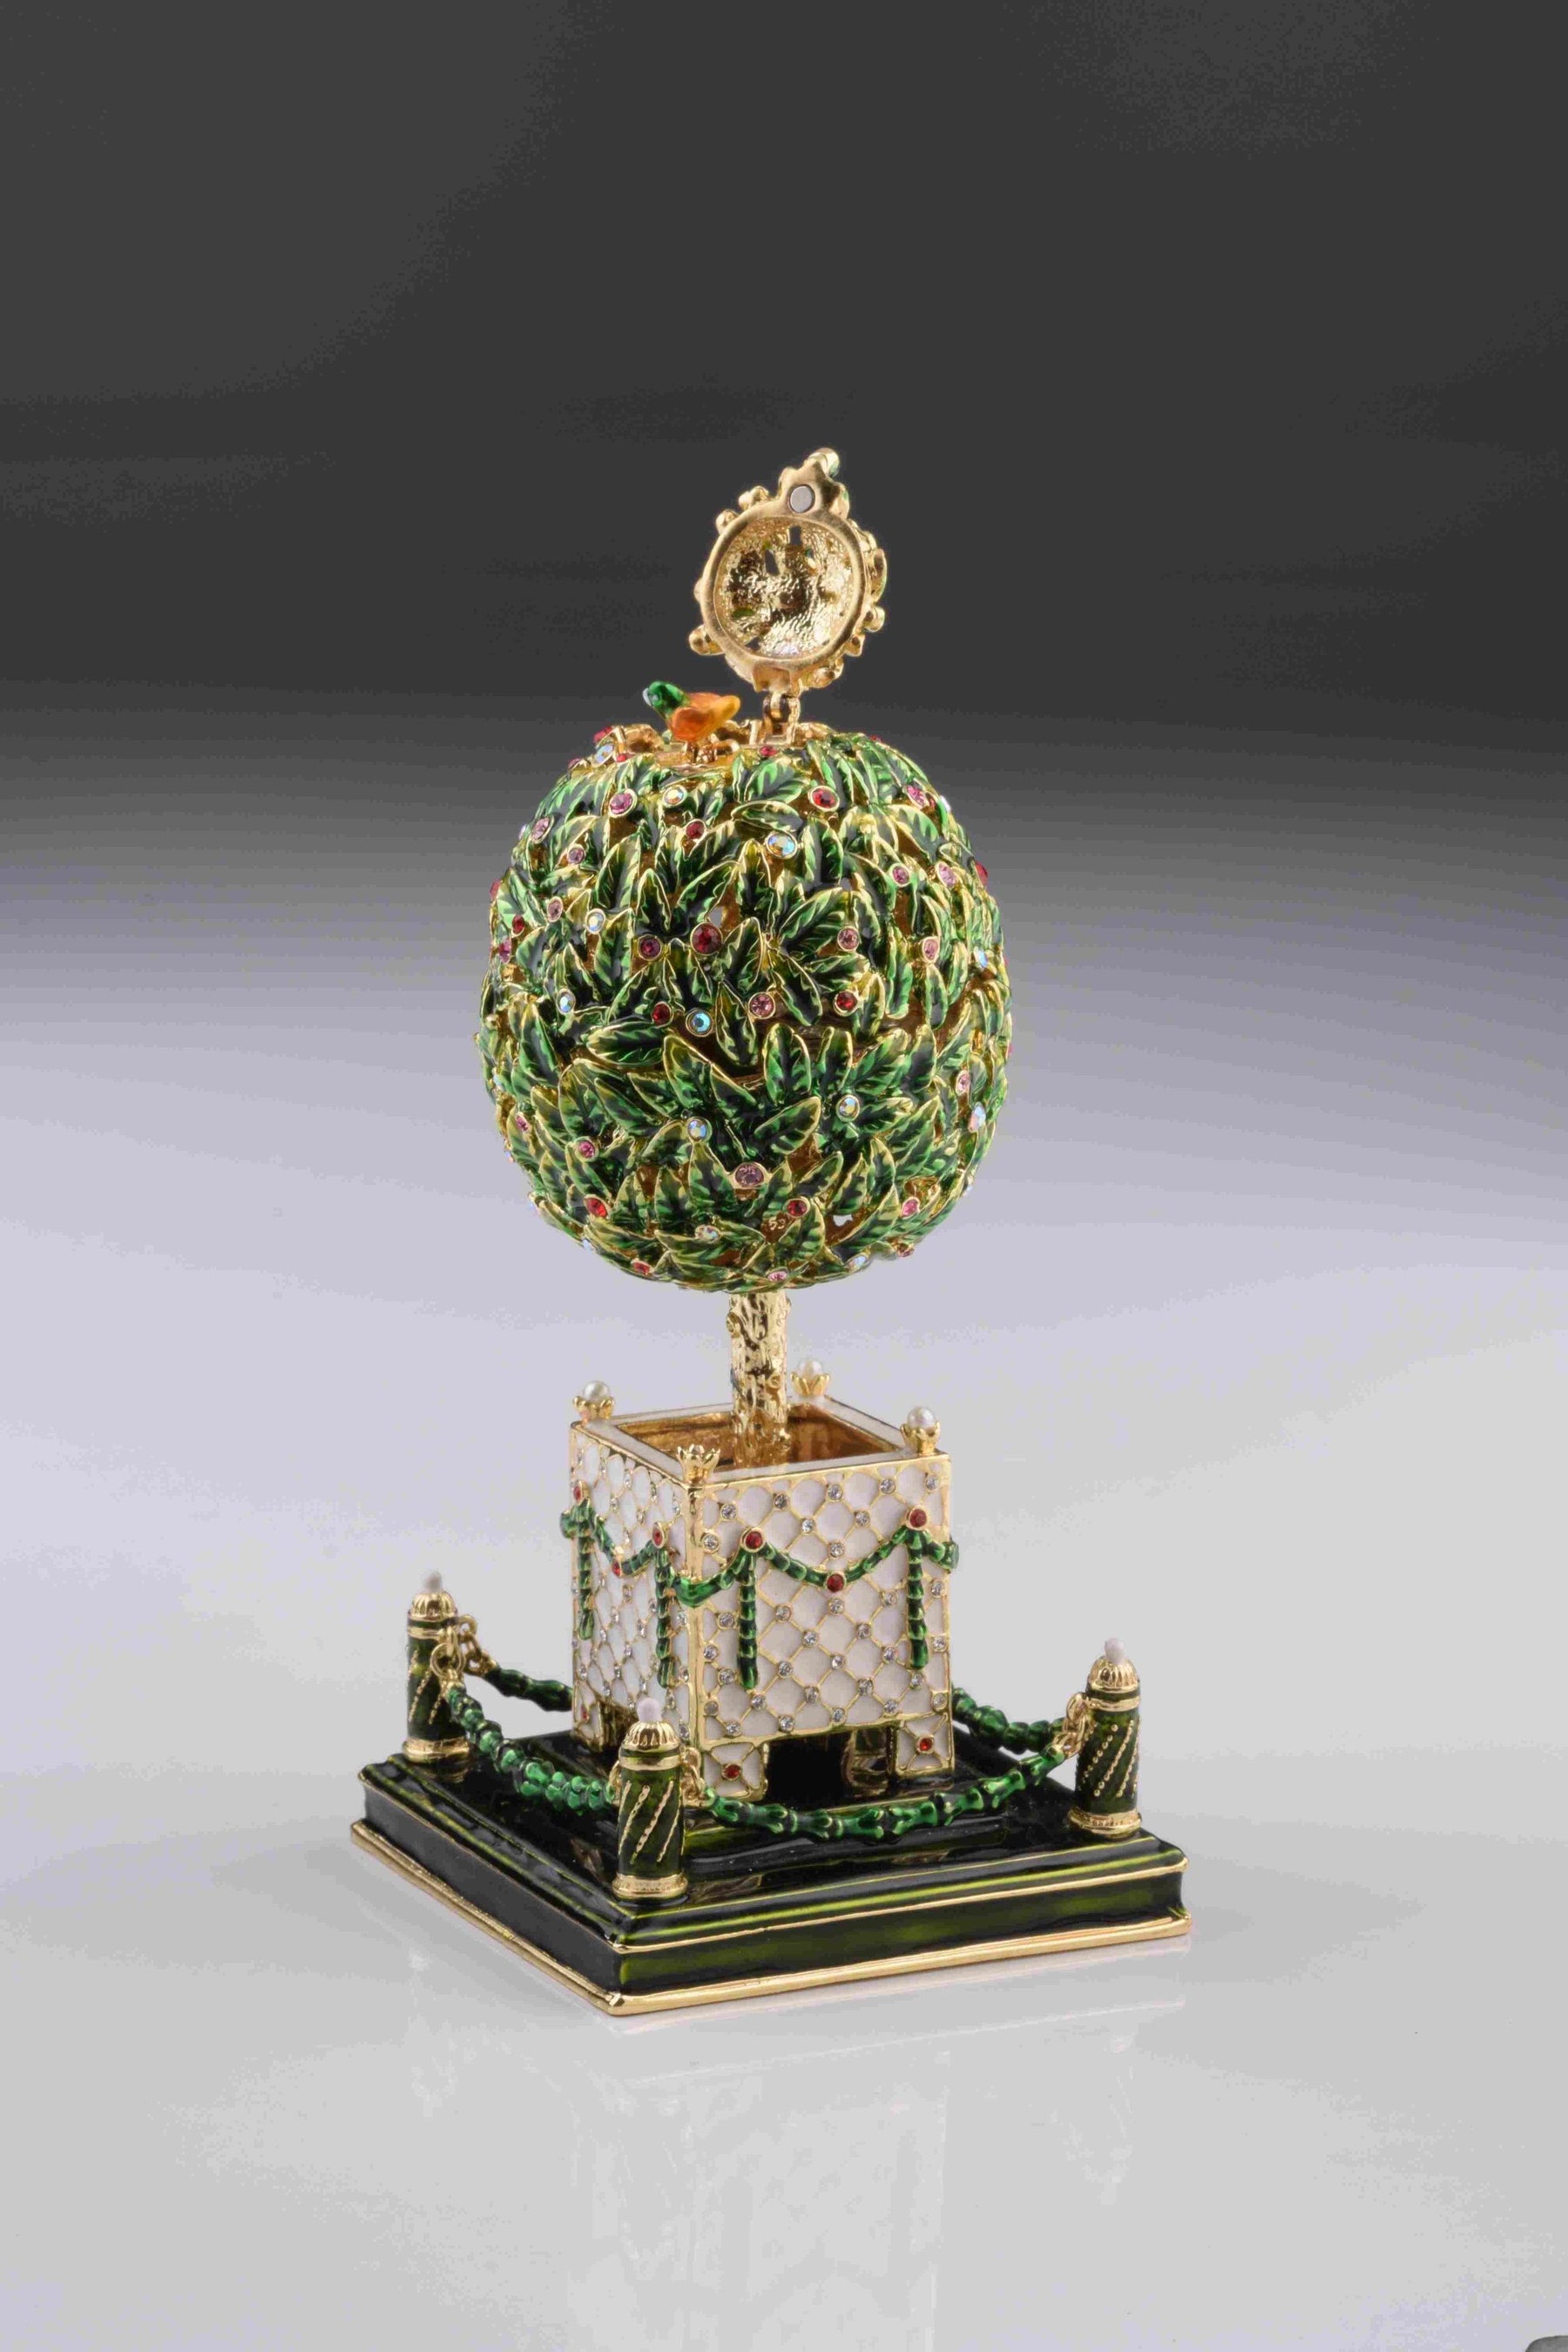 Oeuf de Fabergé de laurier avec cristaux colorés